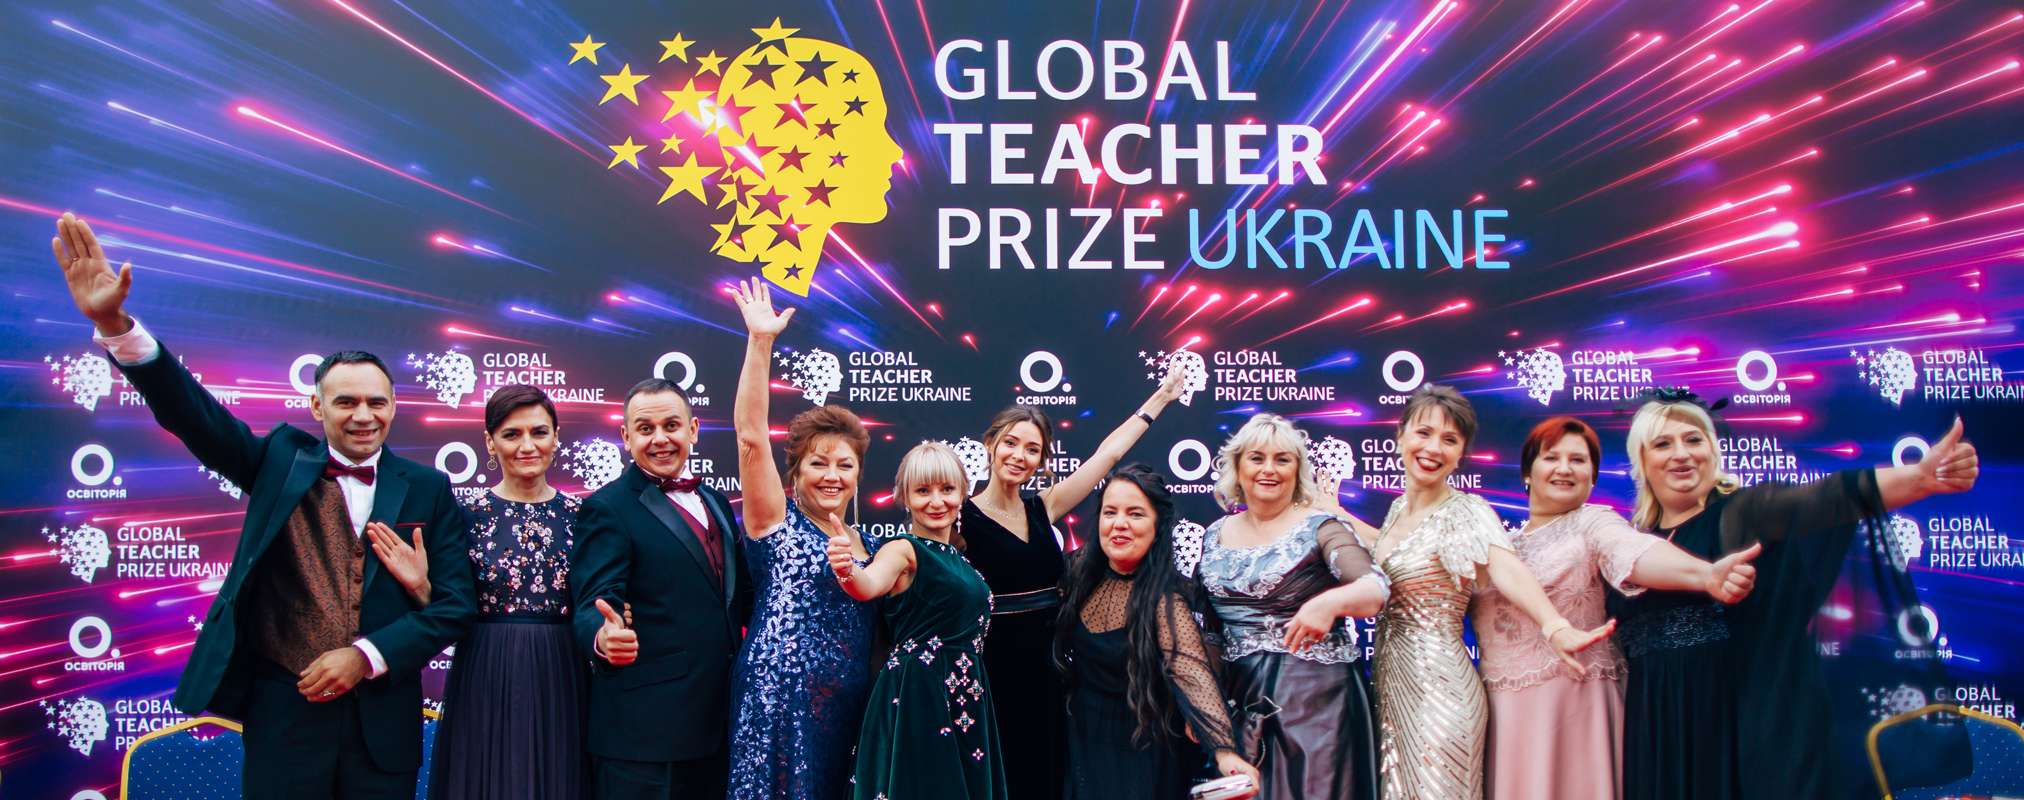 Двоє вчителів із Вінниці в числі  ТОП-50 найкращих педагогів  України за версією Global Teacher Prize Ukraine 2020